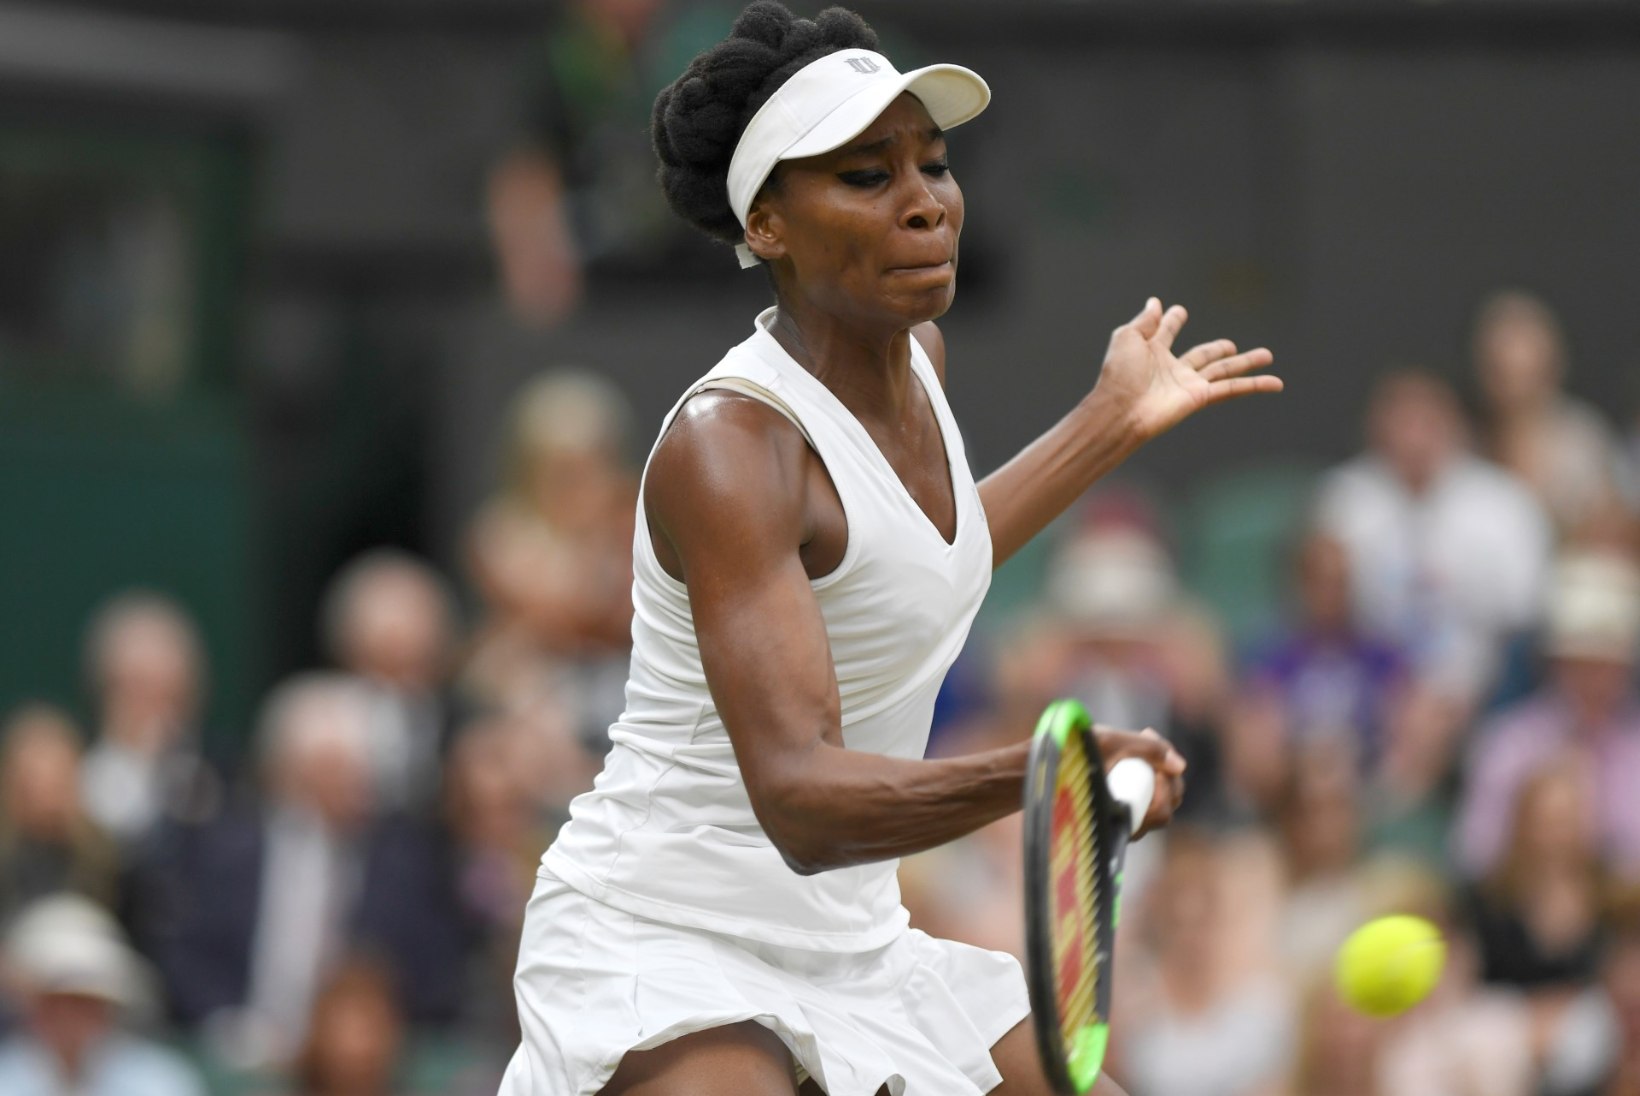 NII SEE JUHTUS | Sport 11.07: Igihaljas Venus Williams jätkab pidurdamatult, odaviskes tehti ajalugu